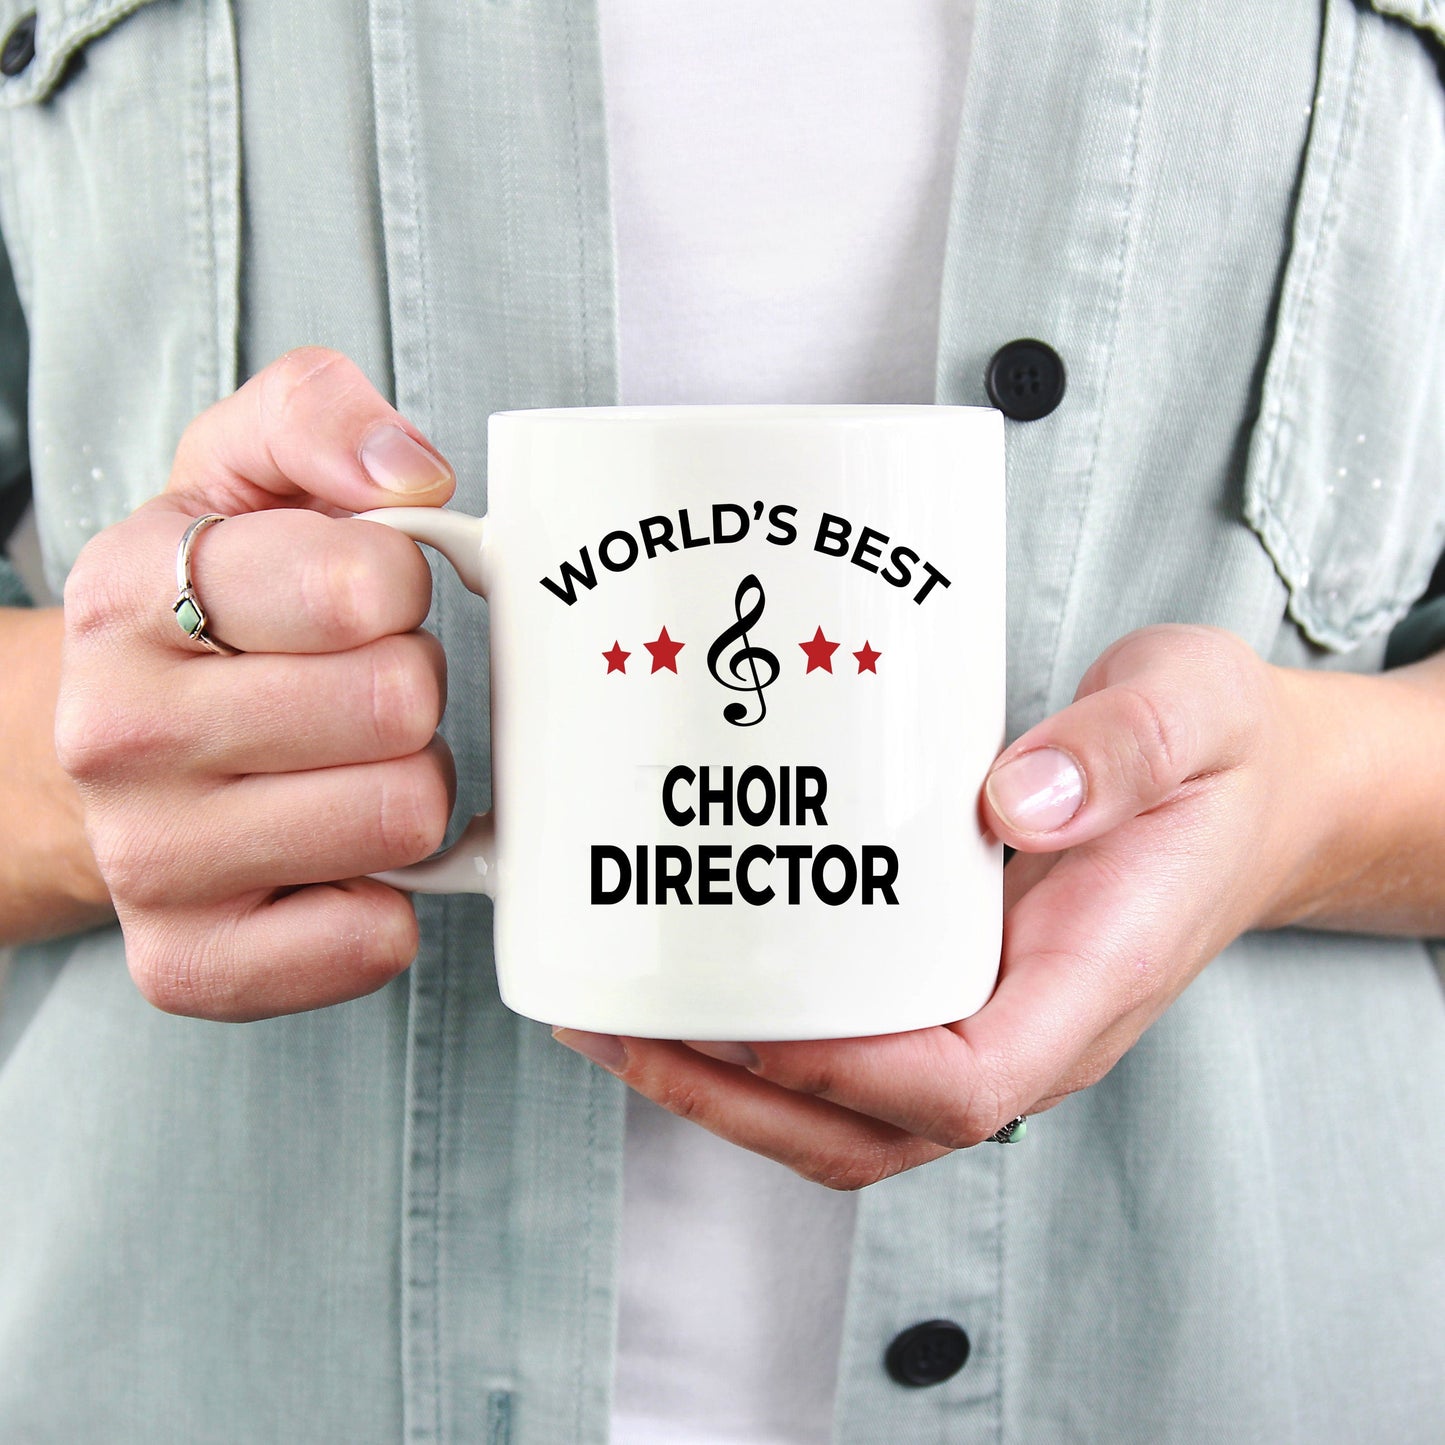 Choir Director Coffee Mug